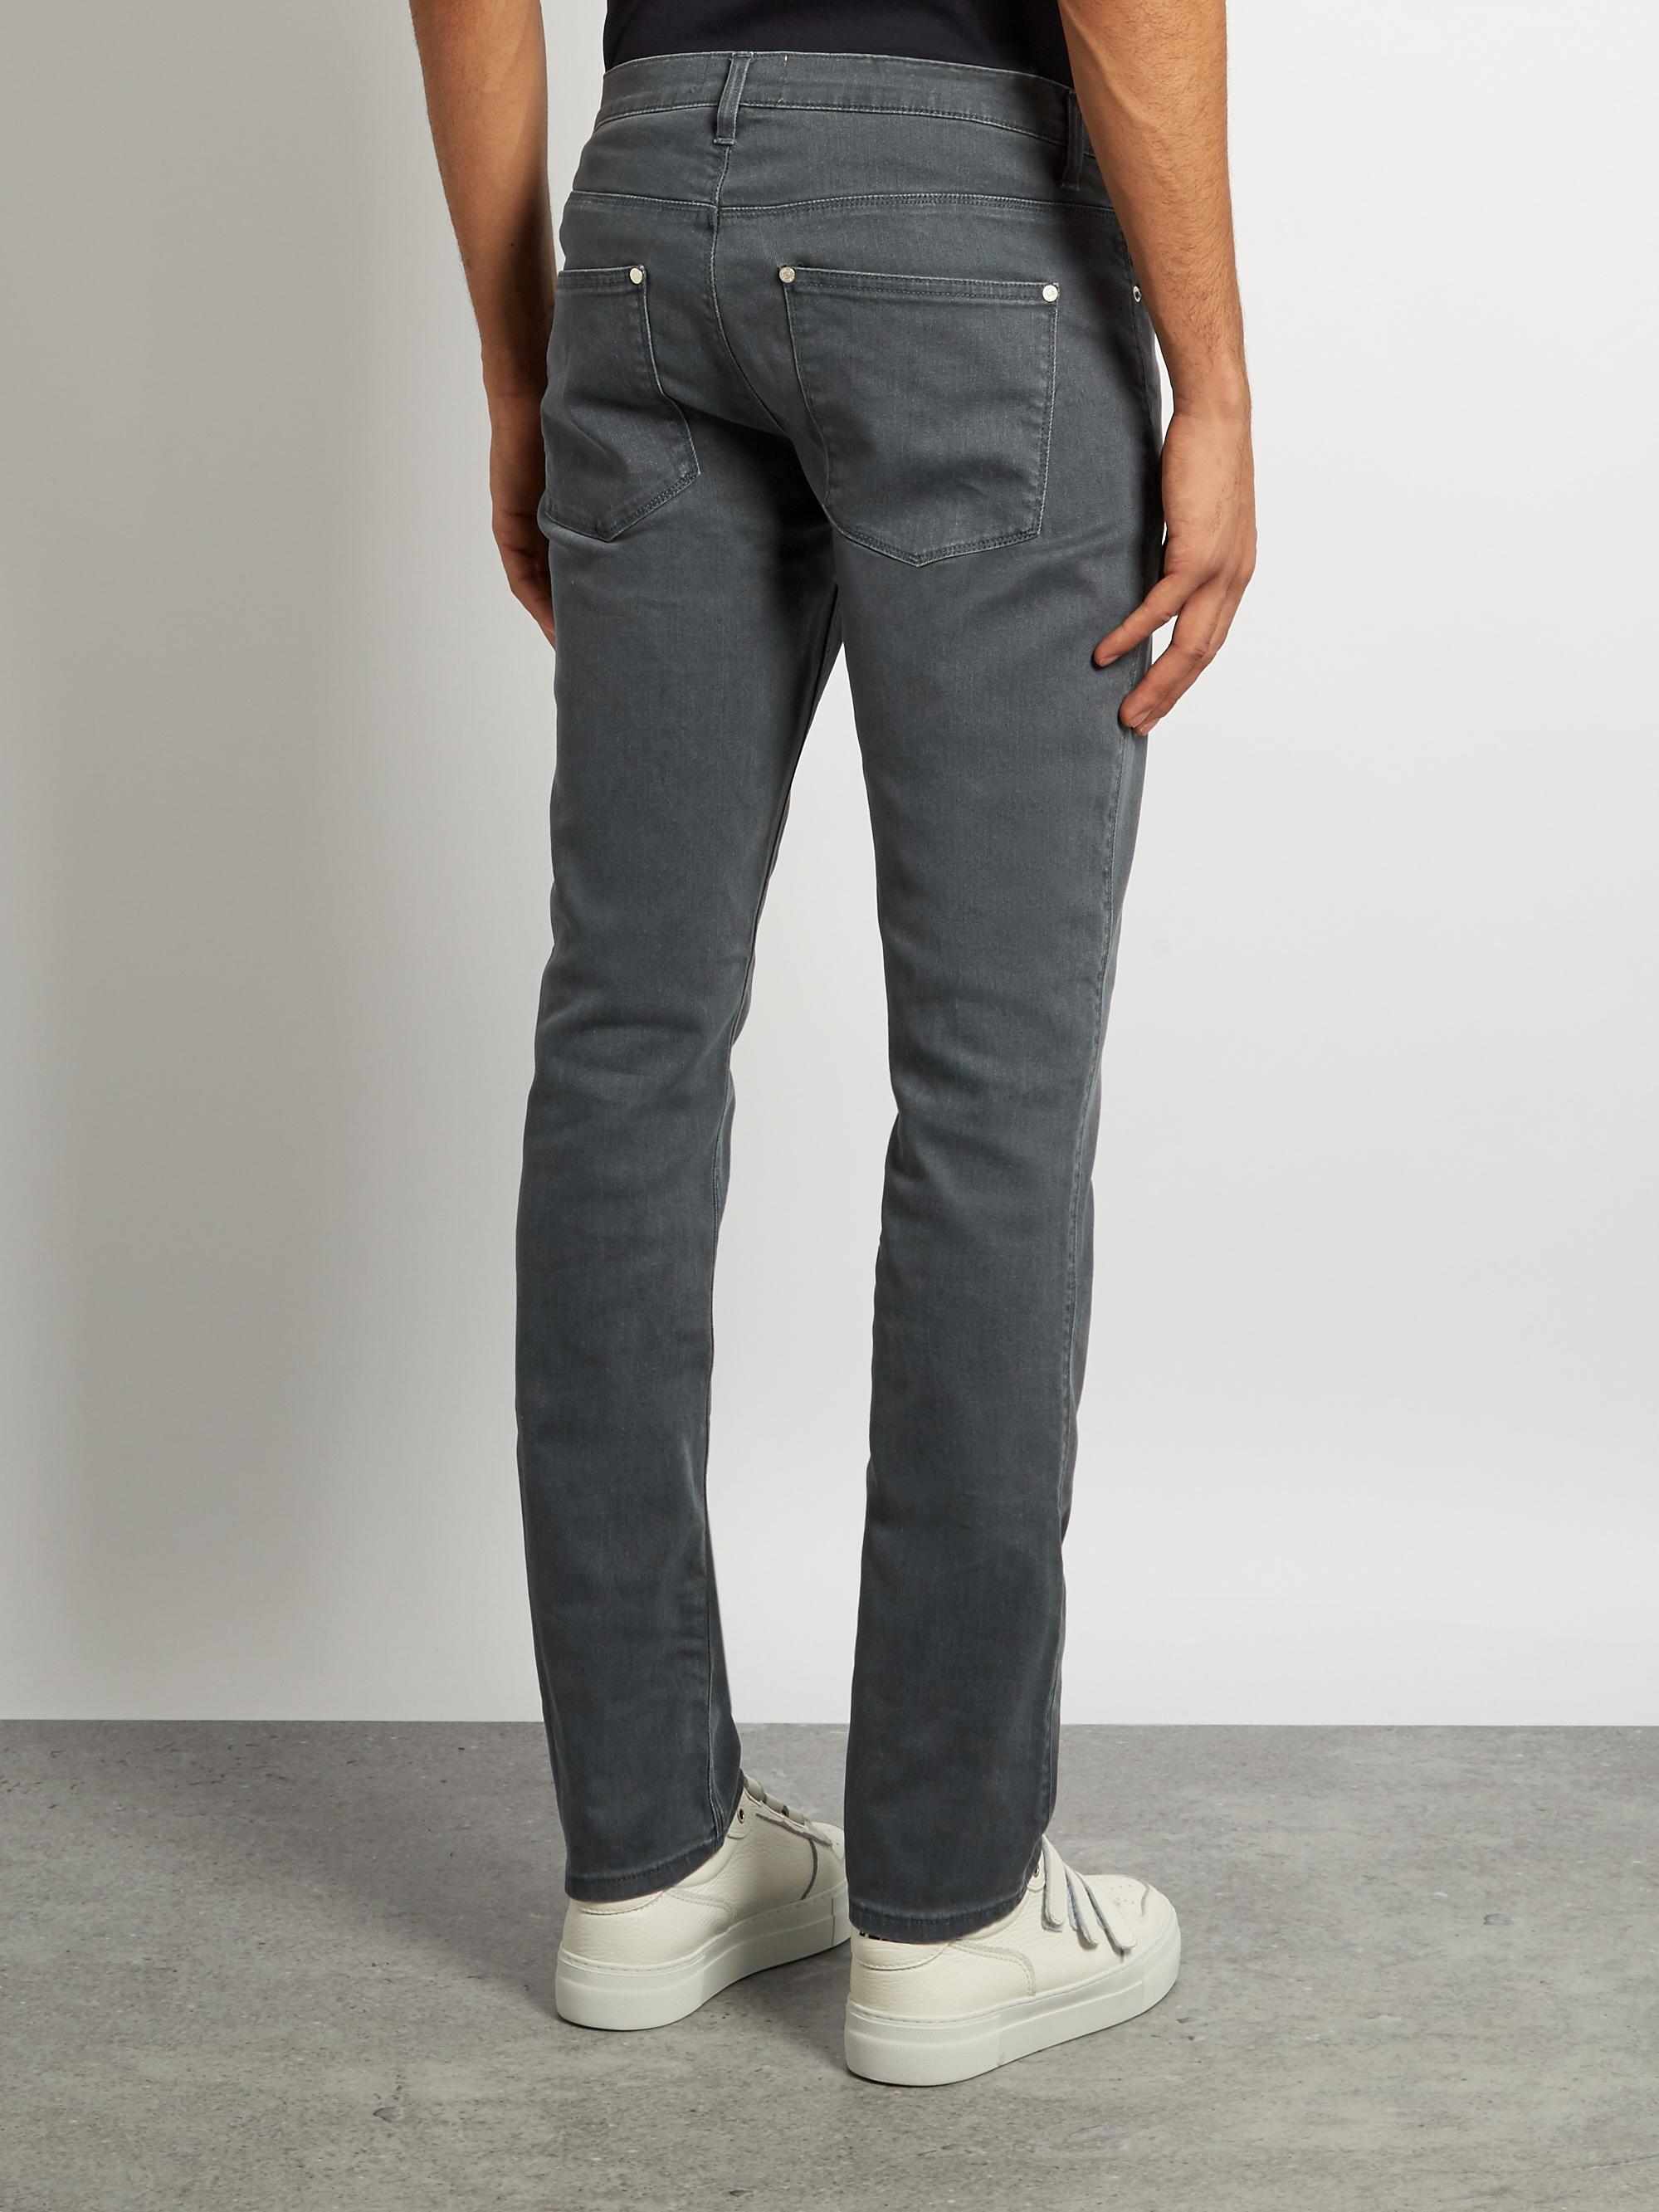 Acne Studios Denim Max Darko Slim-leg Jeans in Grey (Gray) for Men - Lyst